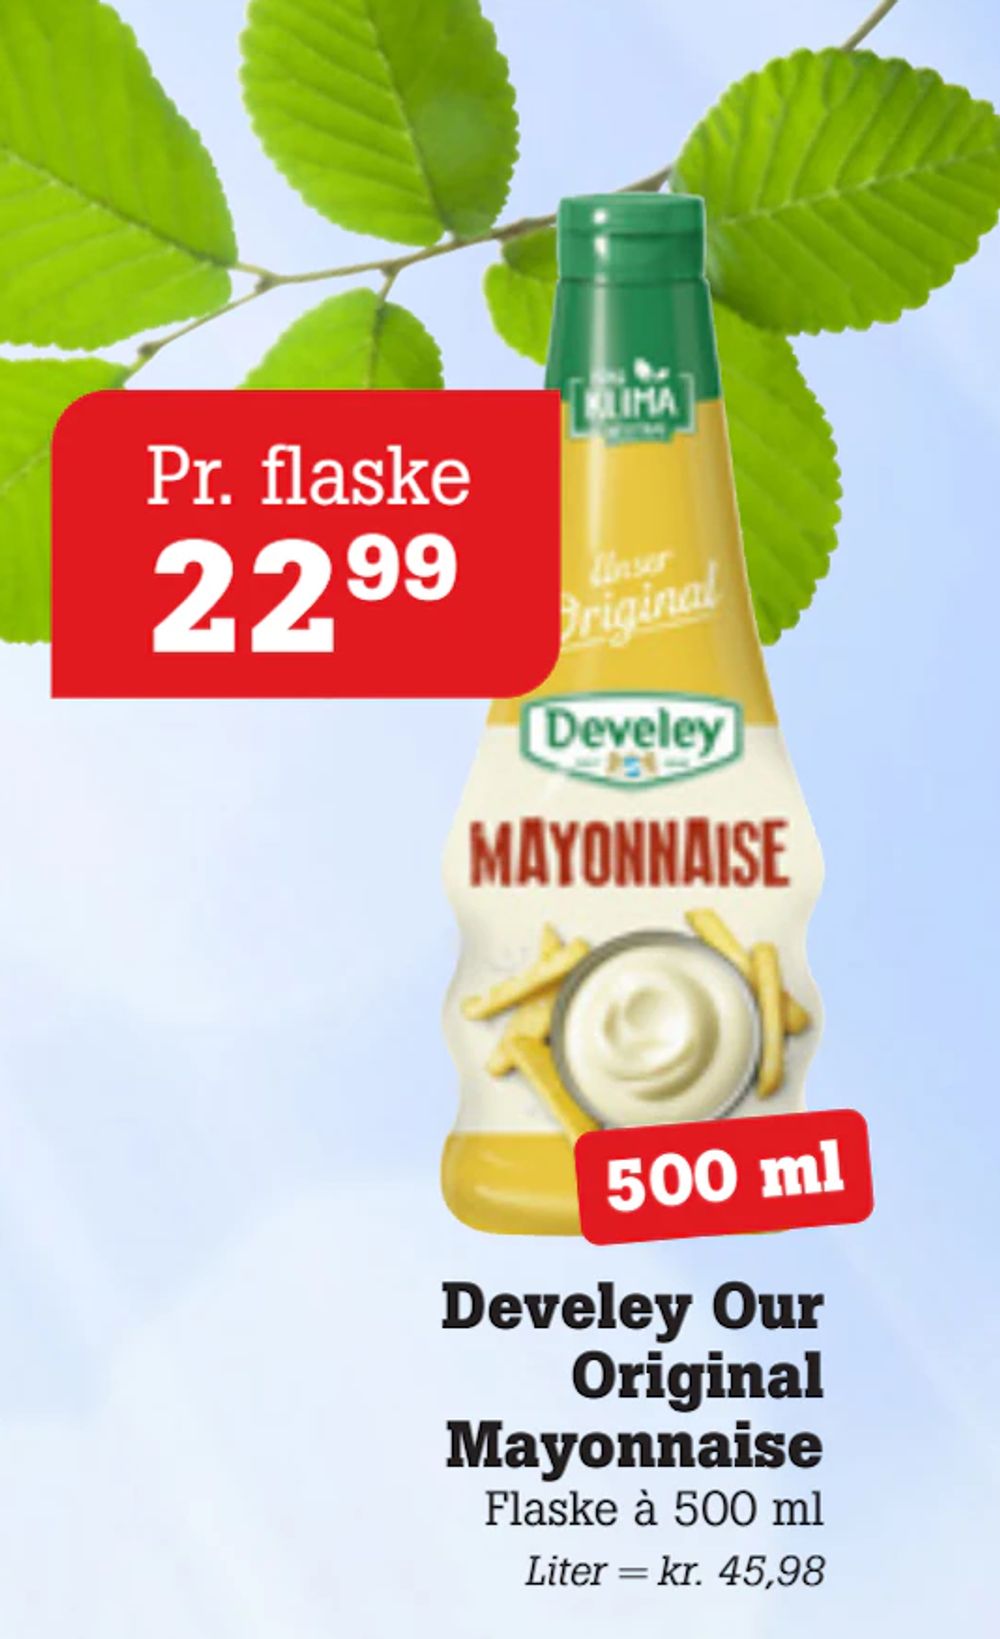 Tilbud på Develey Our Original Mayonnaise fra Poetzsch Padborg til 22,99 kr.